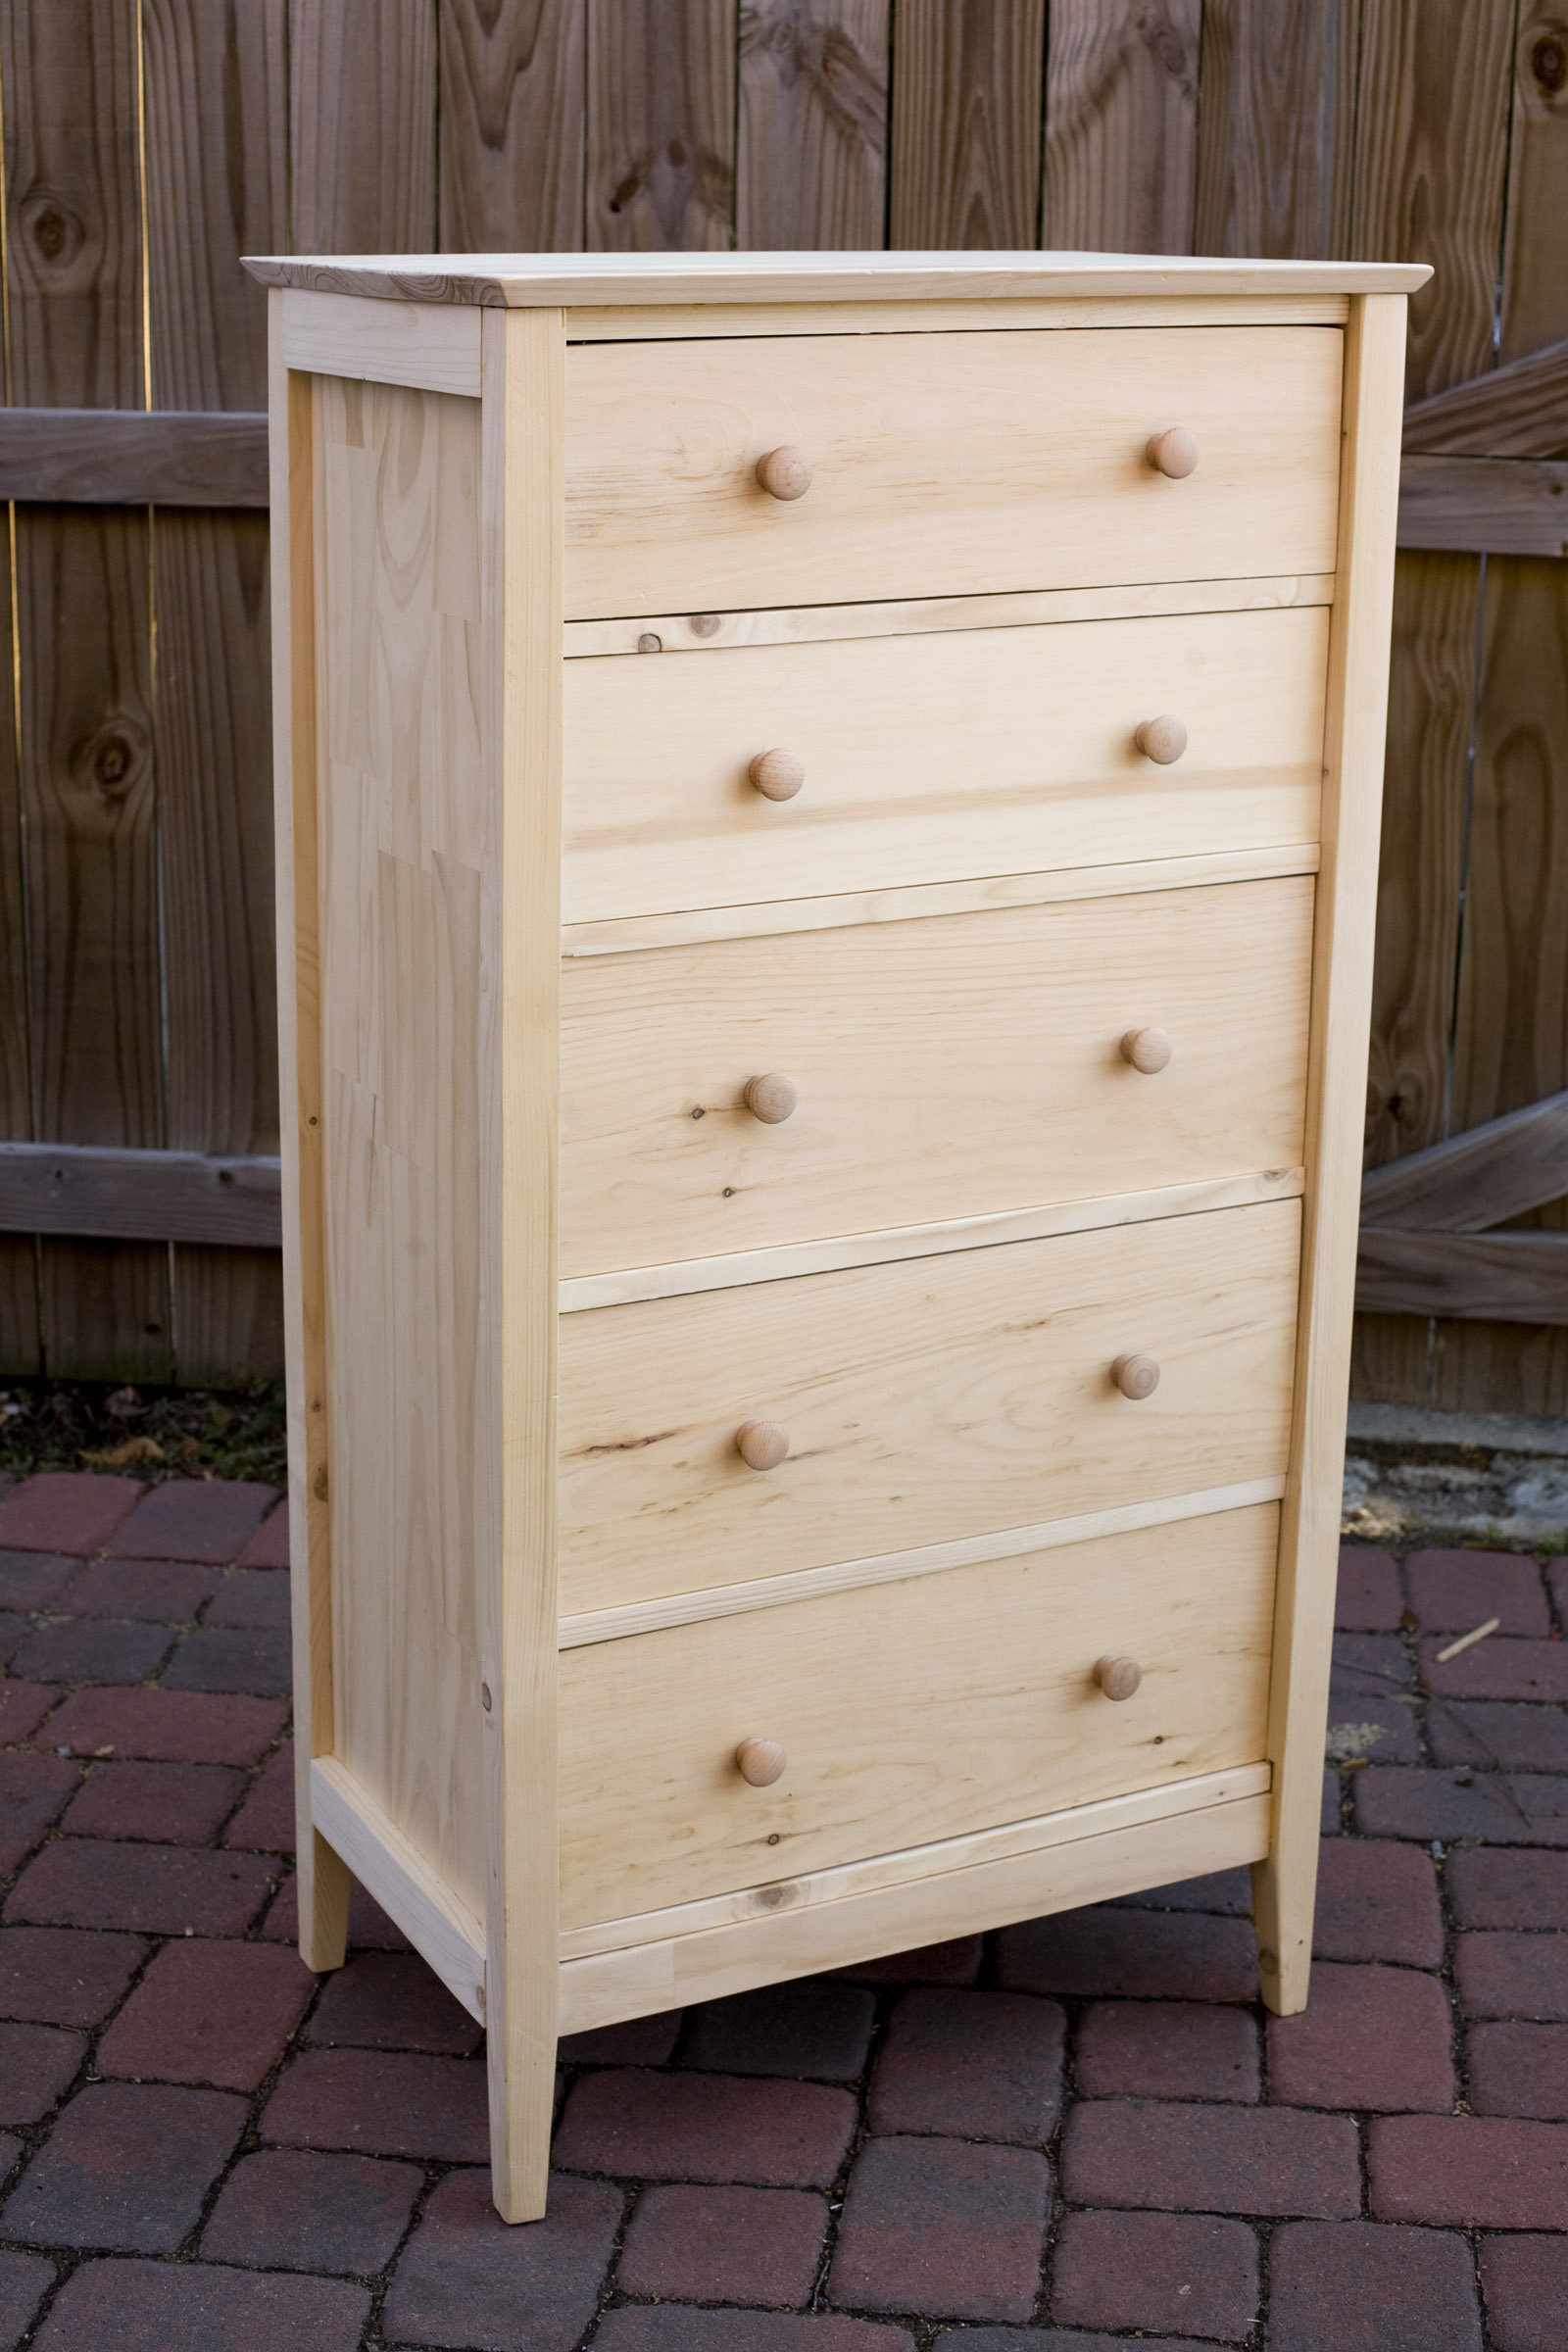 Build Shaker Dresser Woodworking Plan Diy Pdf Shelf Ladder Plans